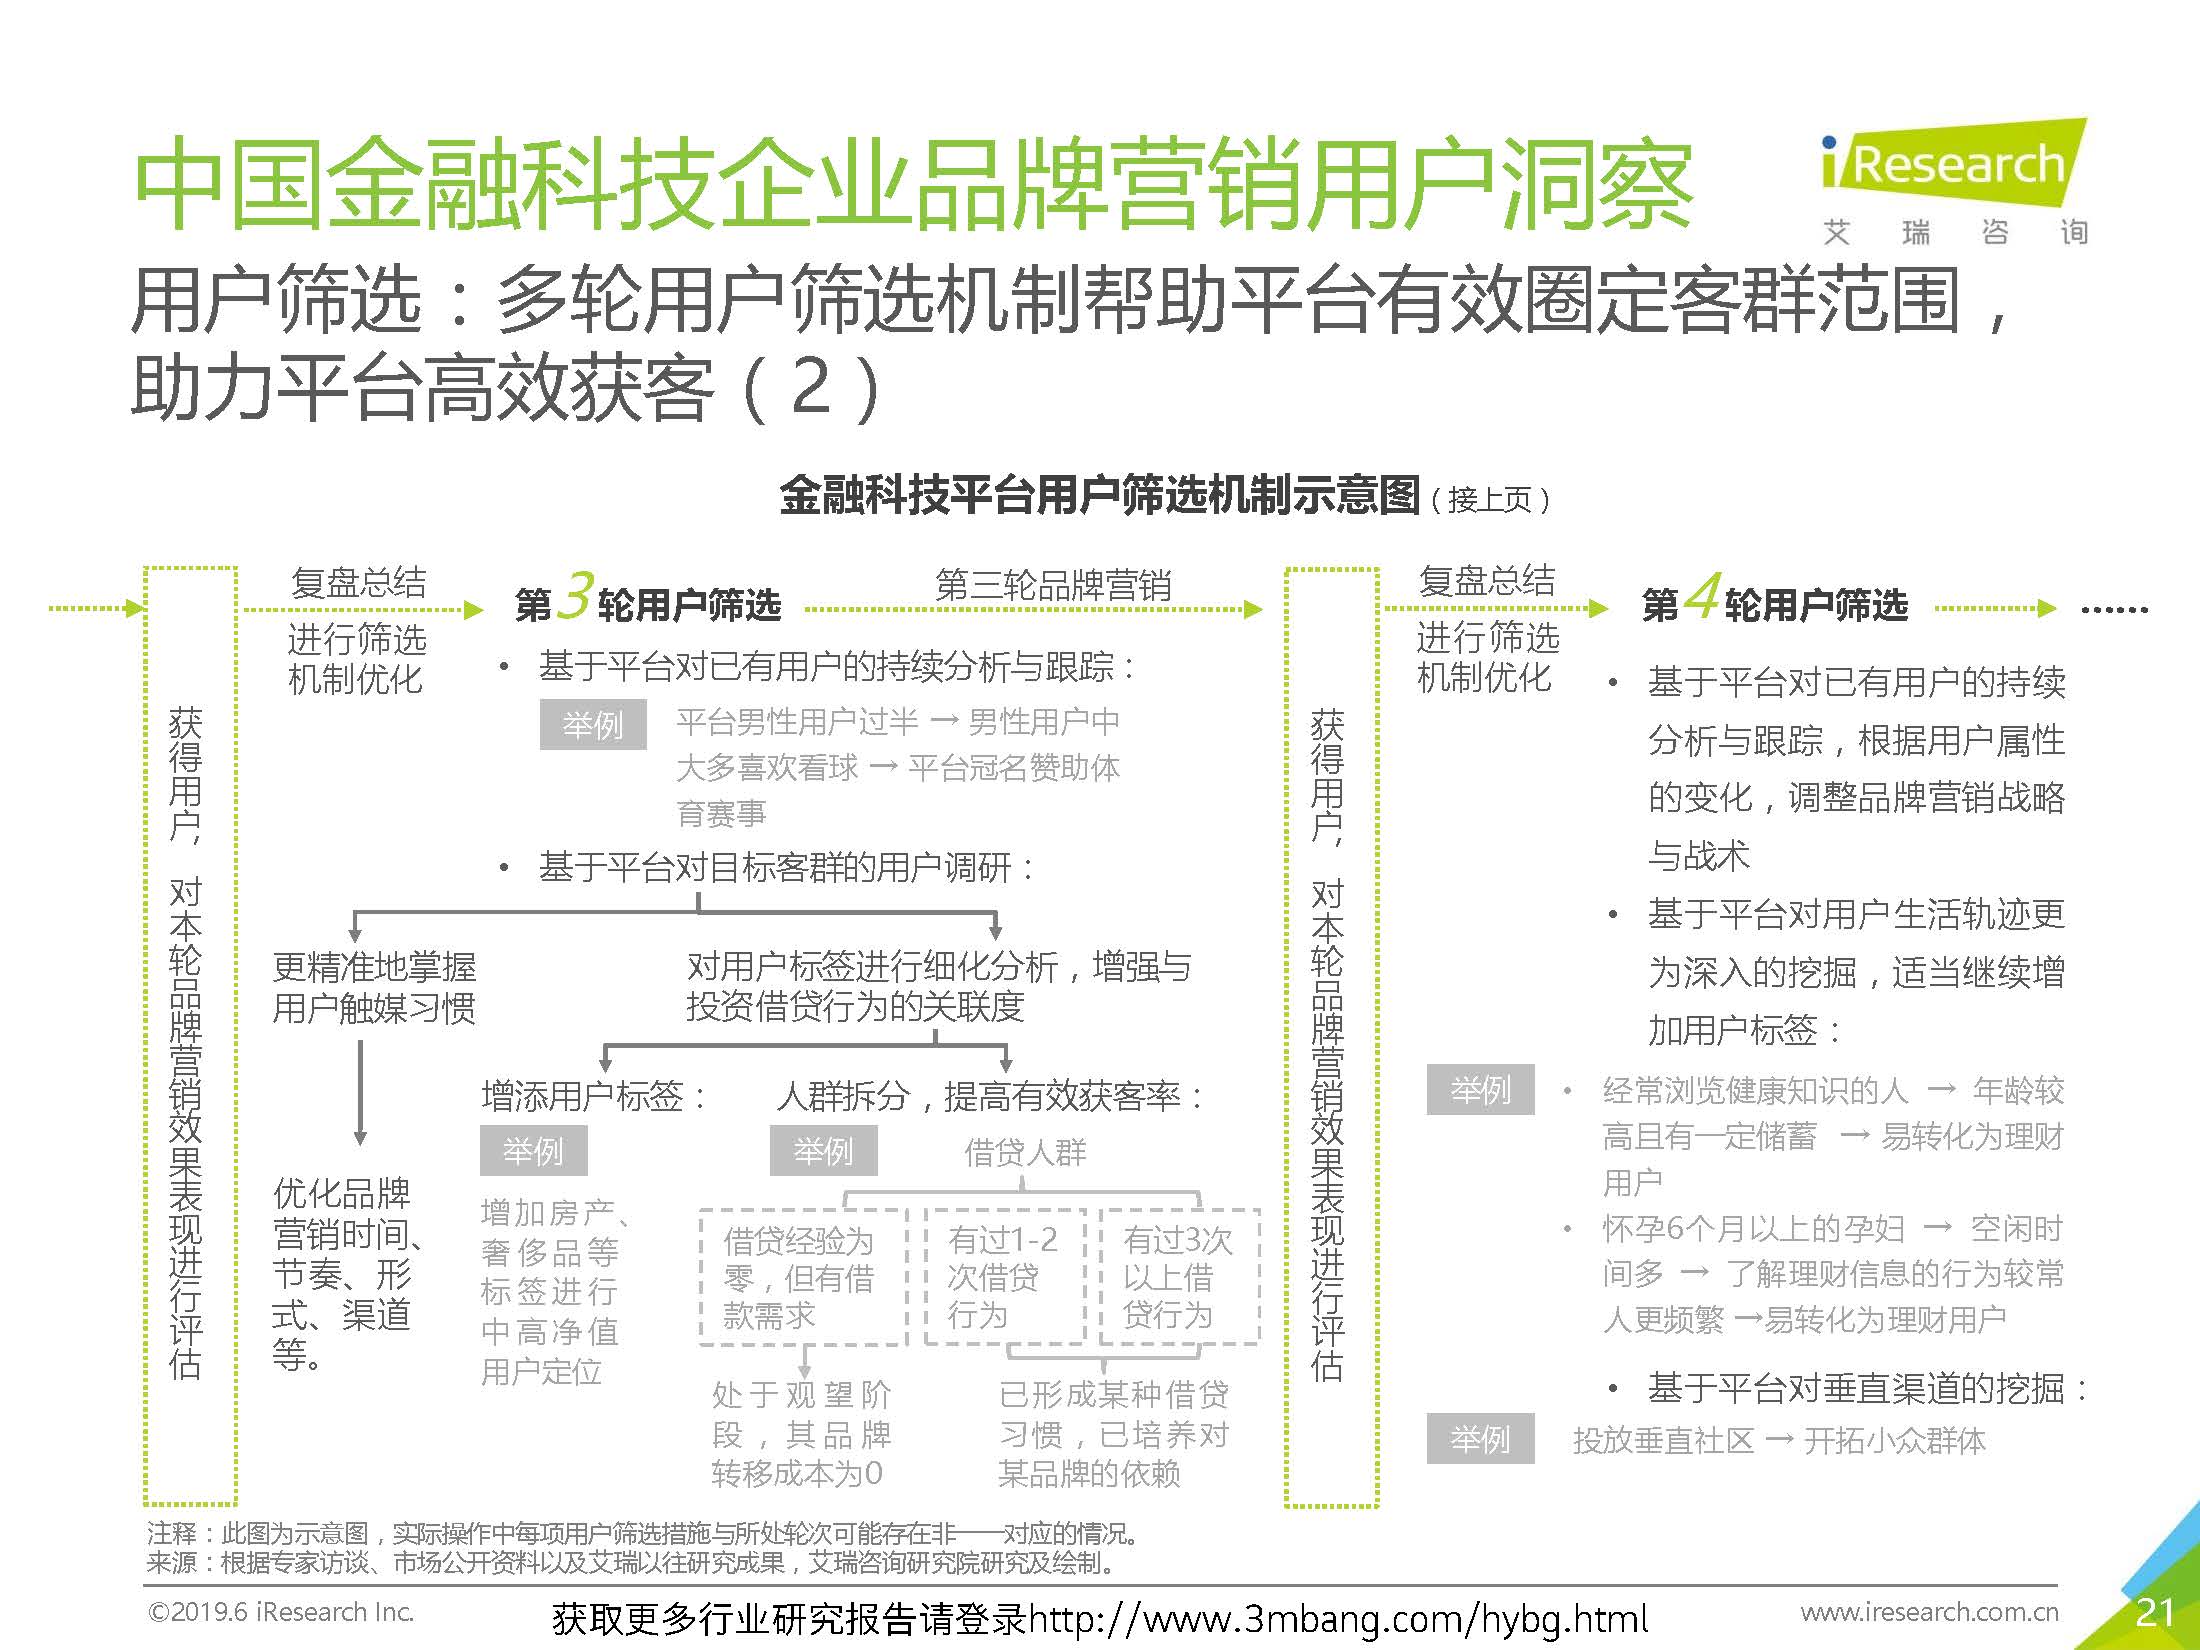 艾瑞：2019年-静待惊蛰-中国金融科技企业品牌营销研究报告(37页)_页面_21.jpg